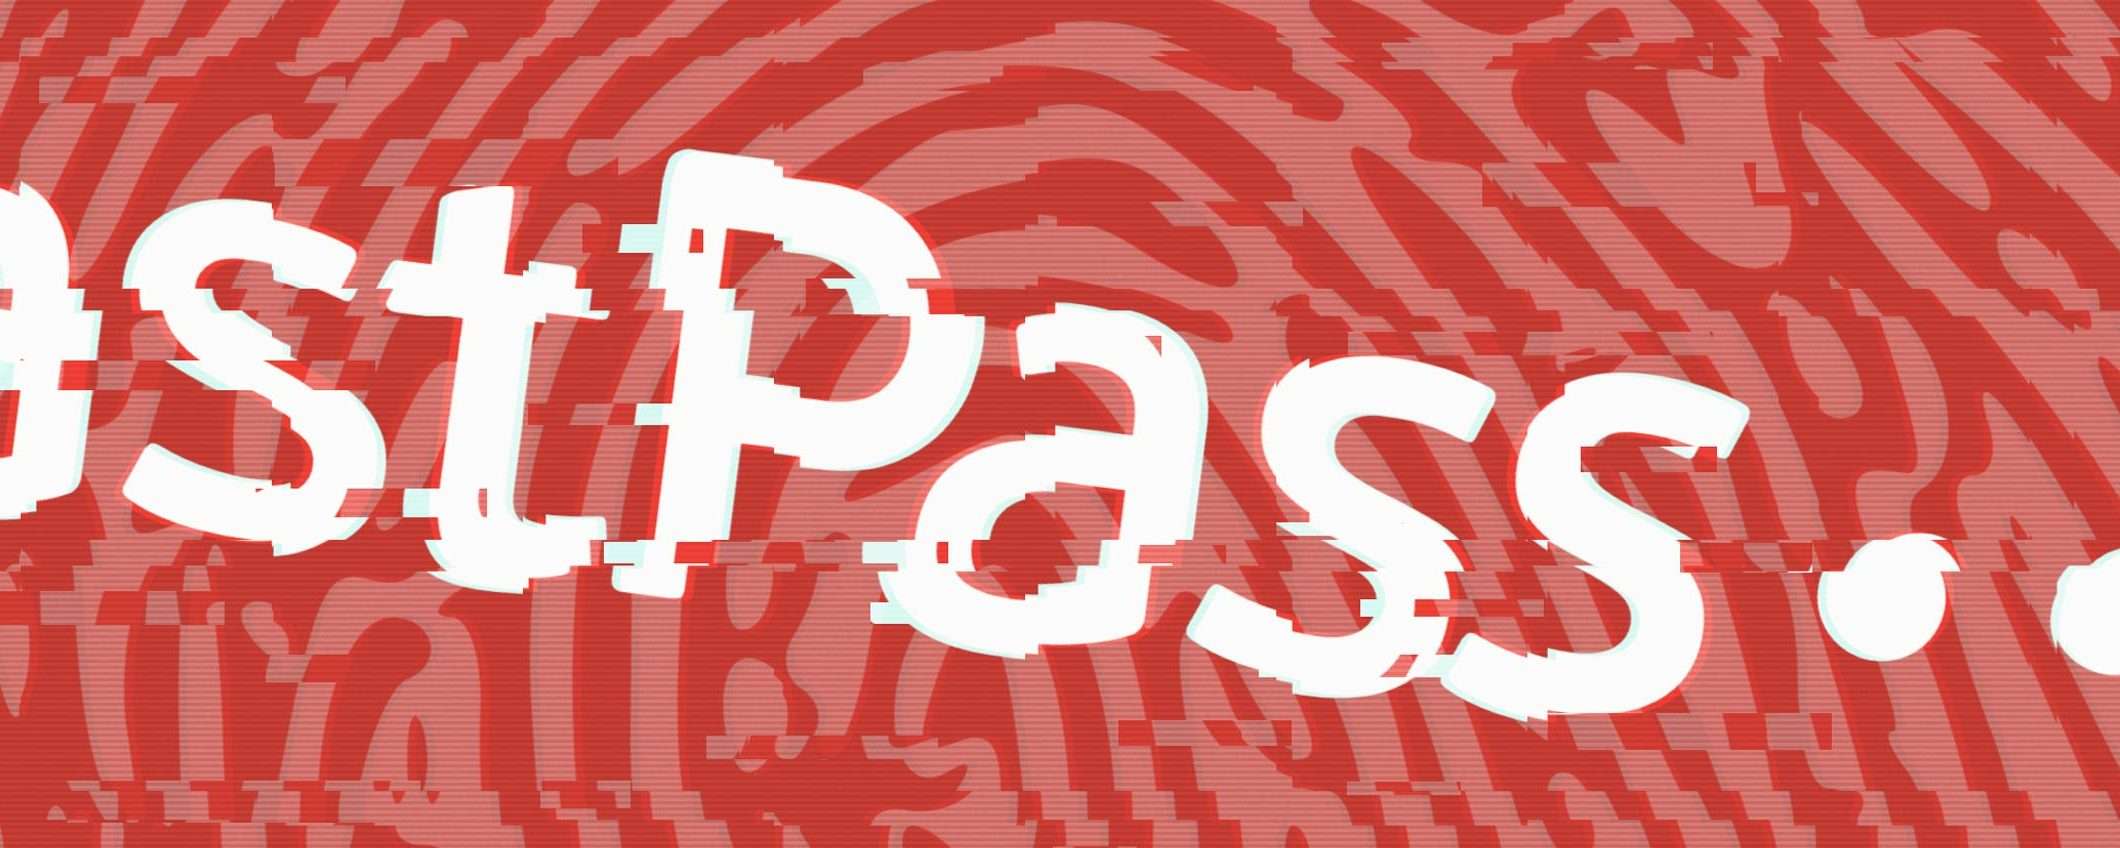 LastPass, che disastro: accesso ai dati degli utenti